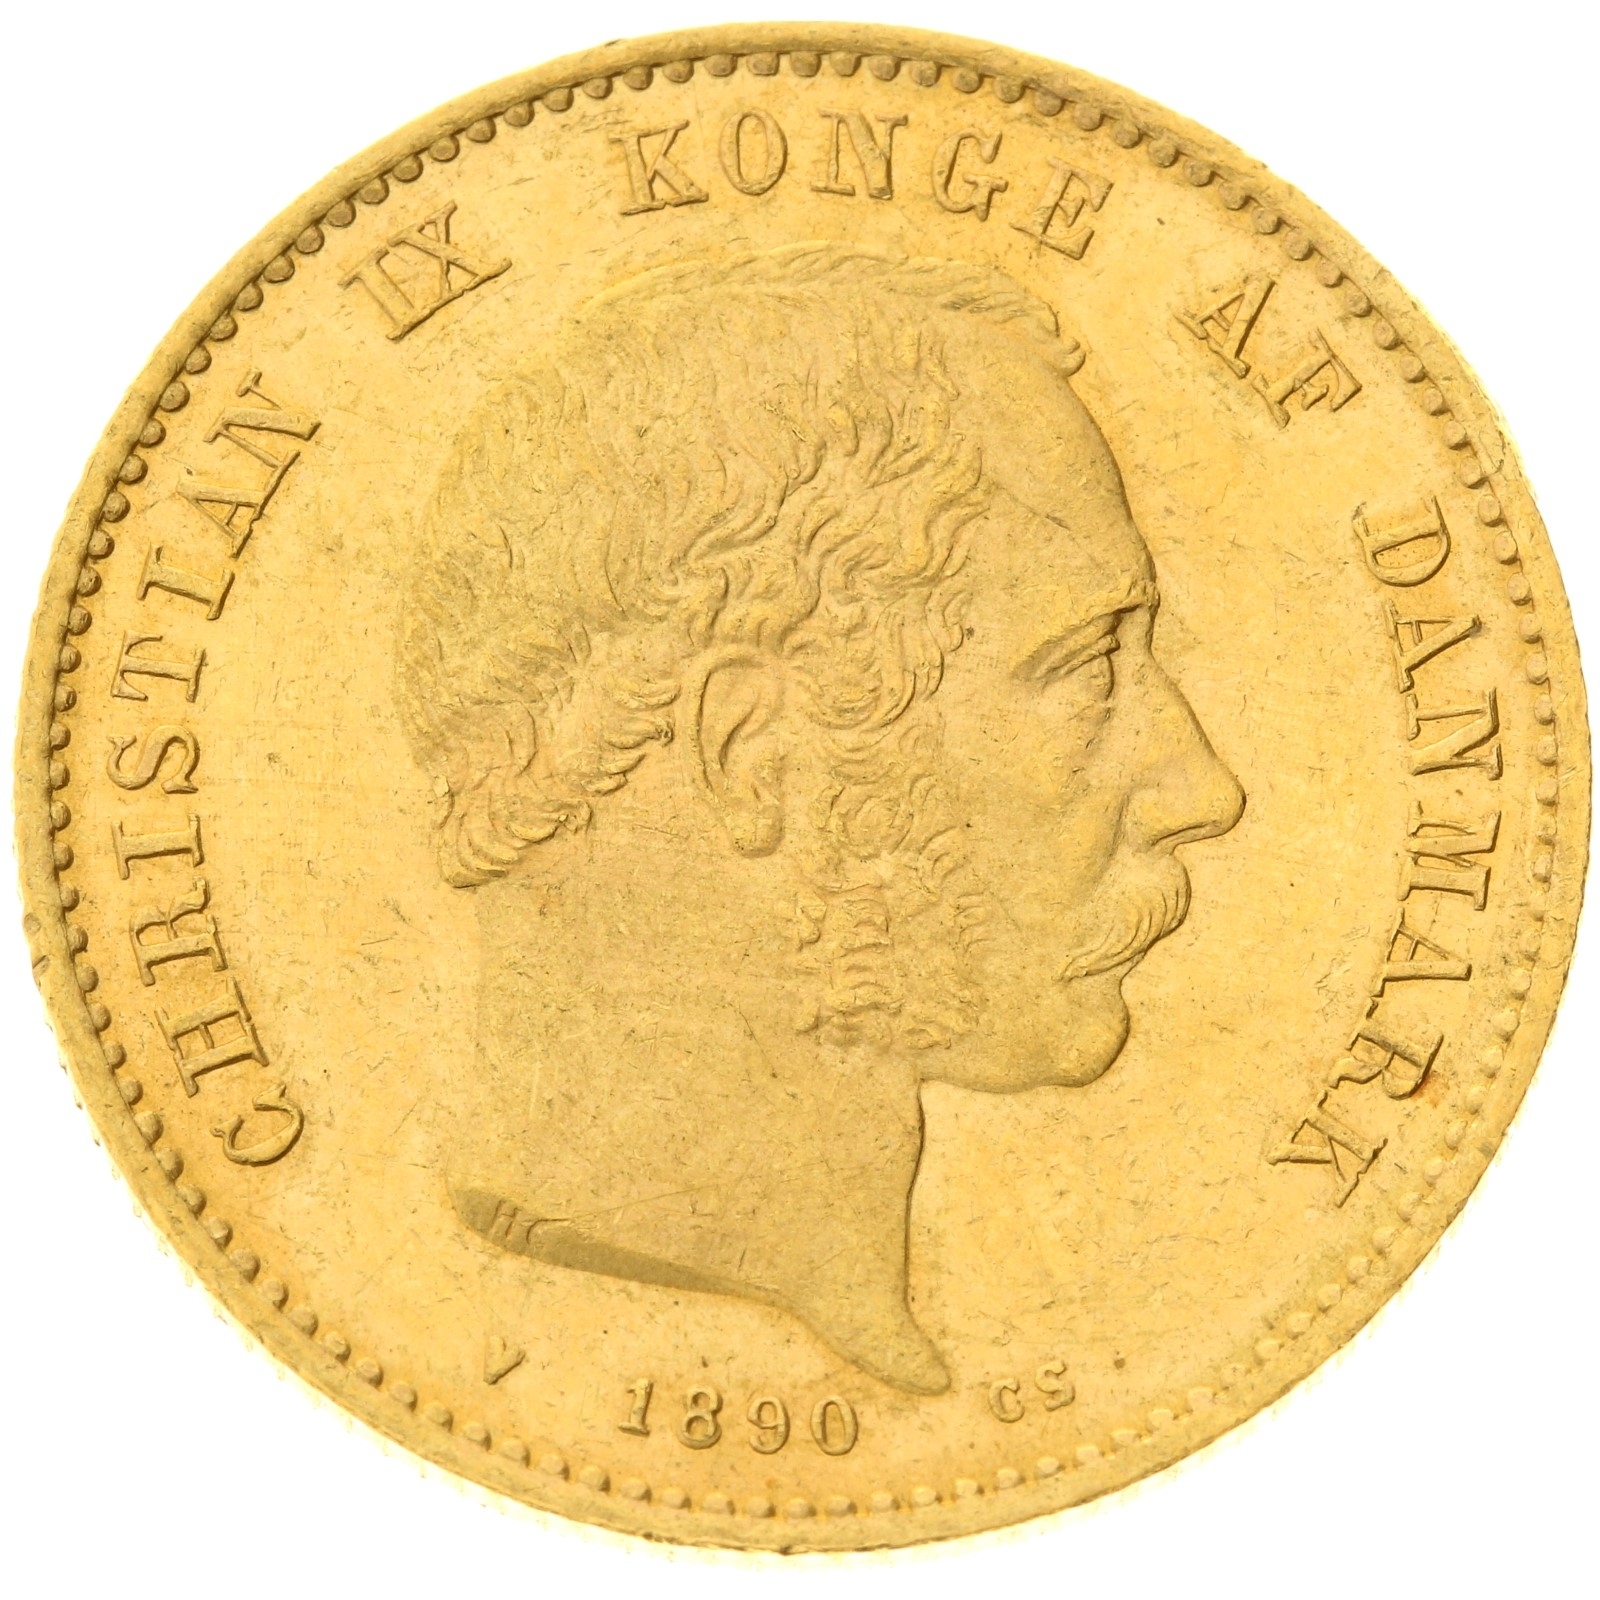 Denmark - 20 kroner - 1890 - Christian IX 